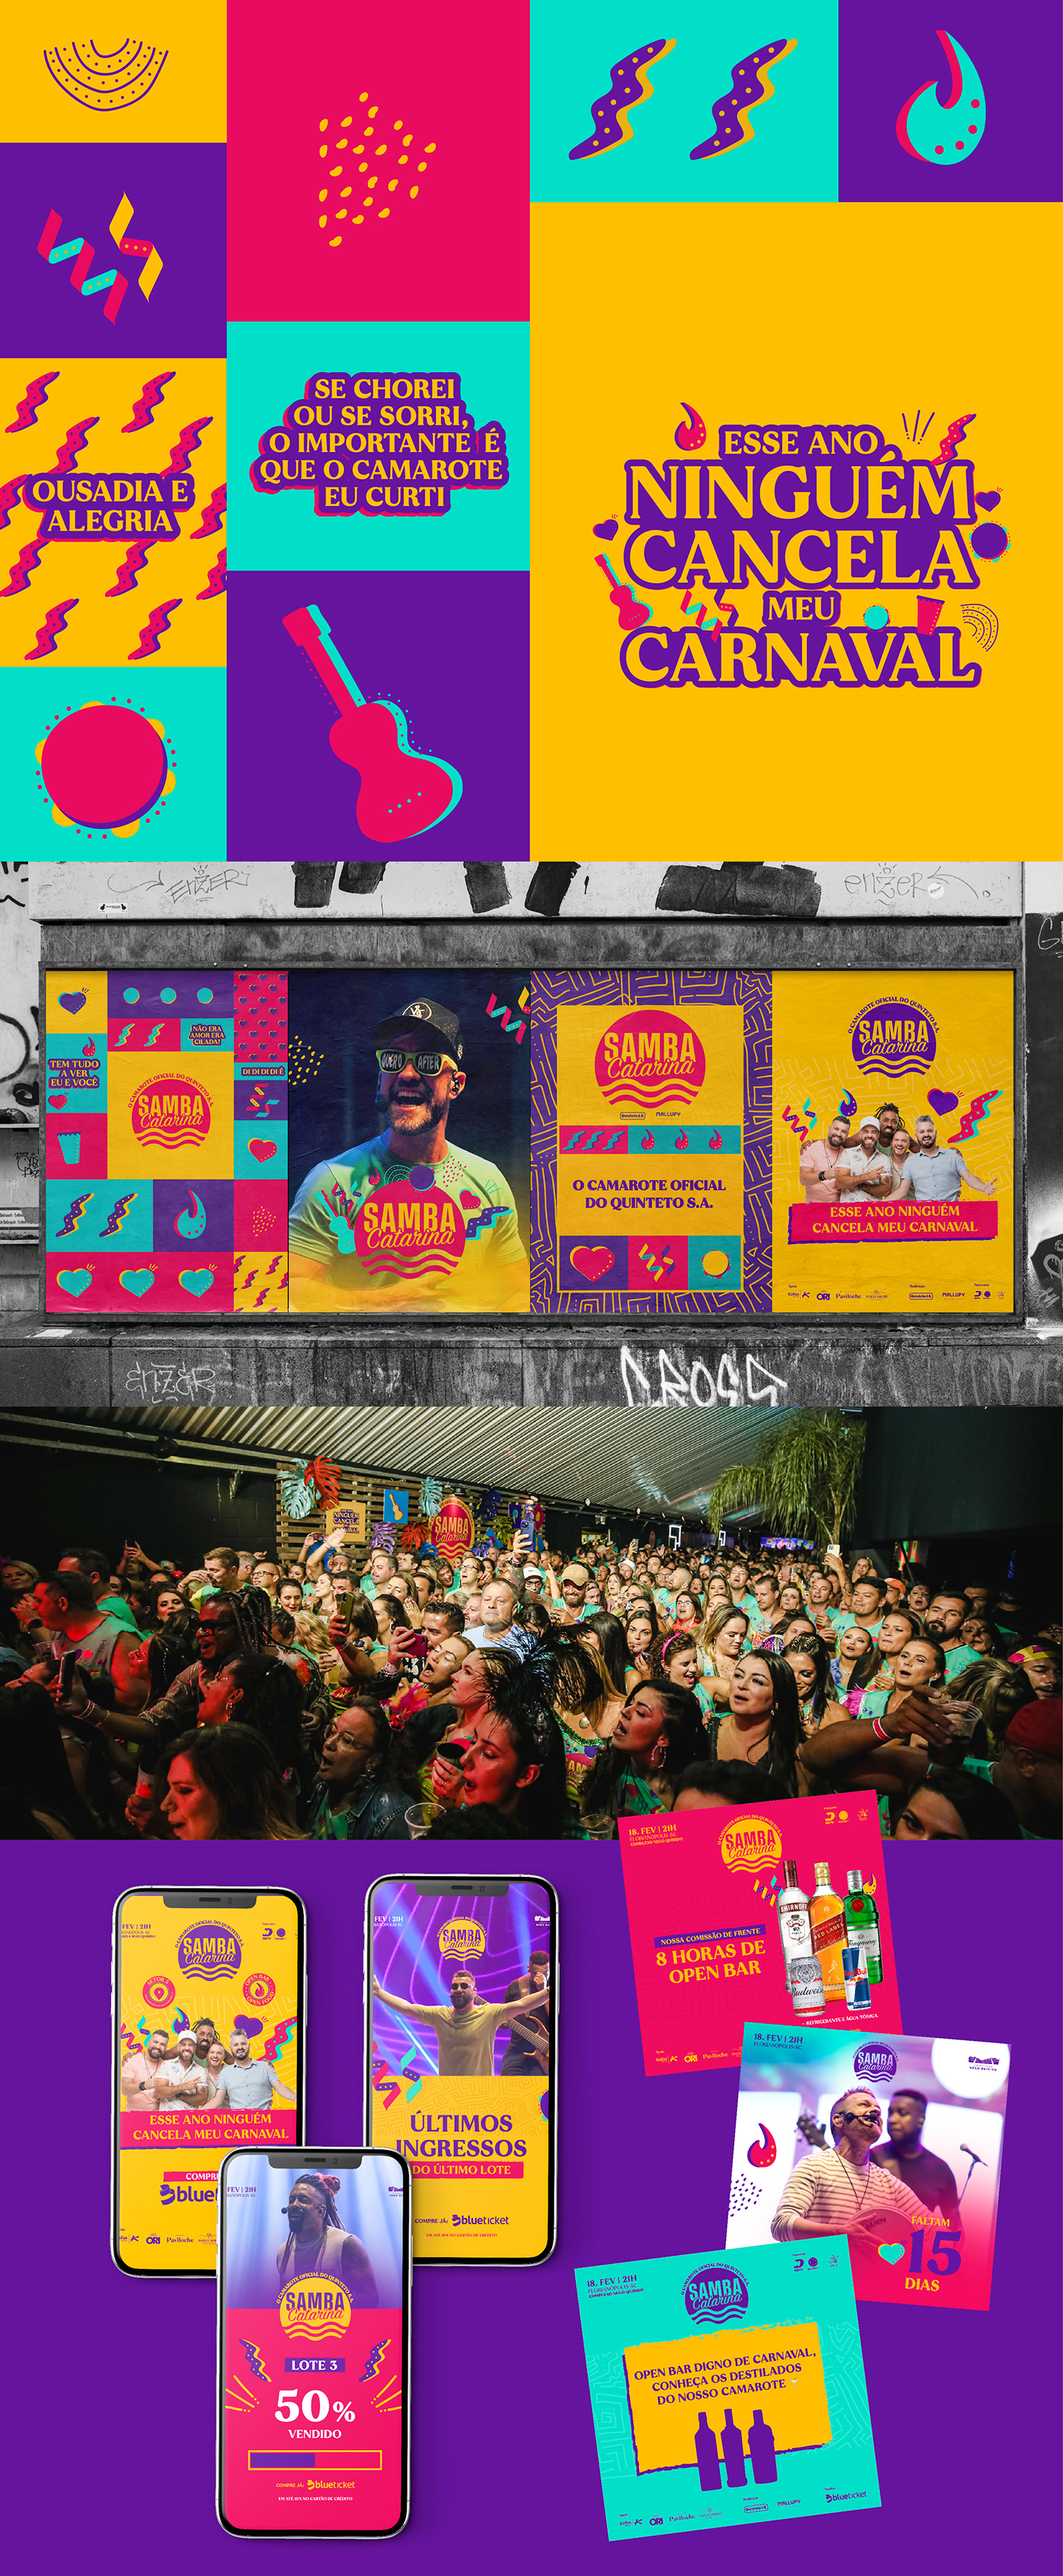 Carnaval Carnival design gráfico Event festival music party Samba Sinalização visual identity